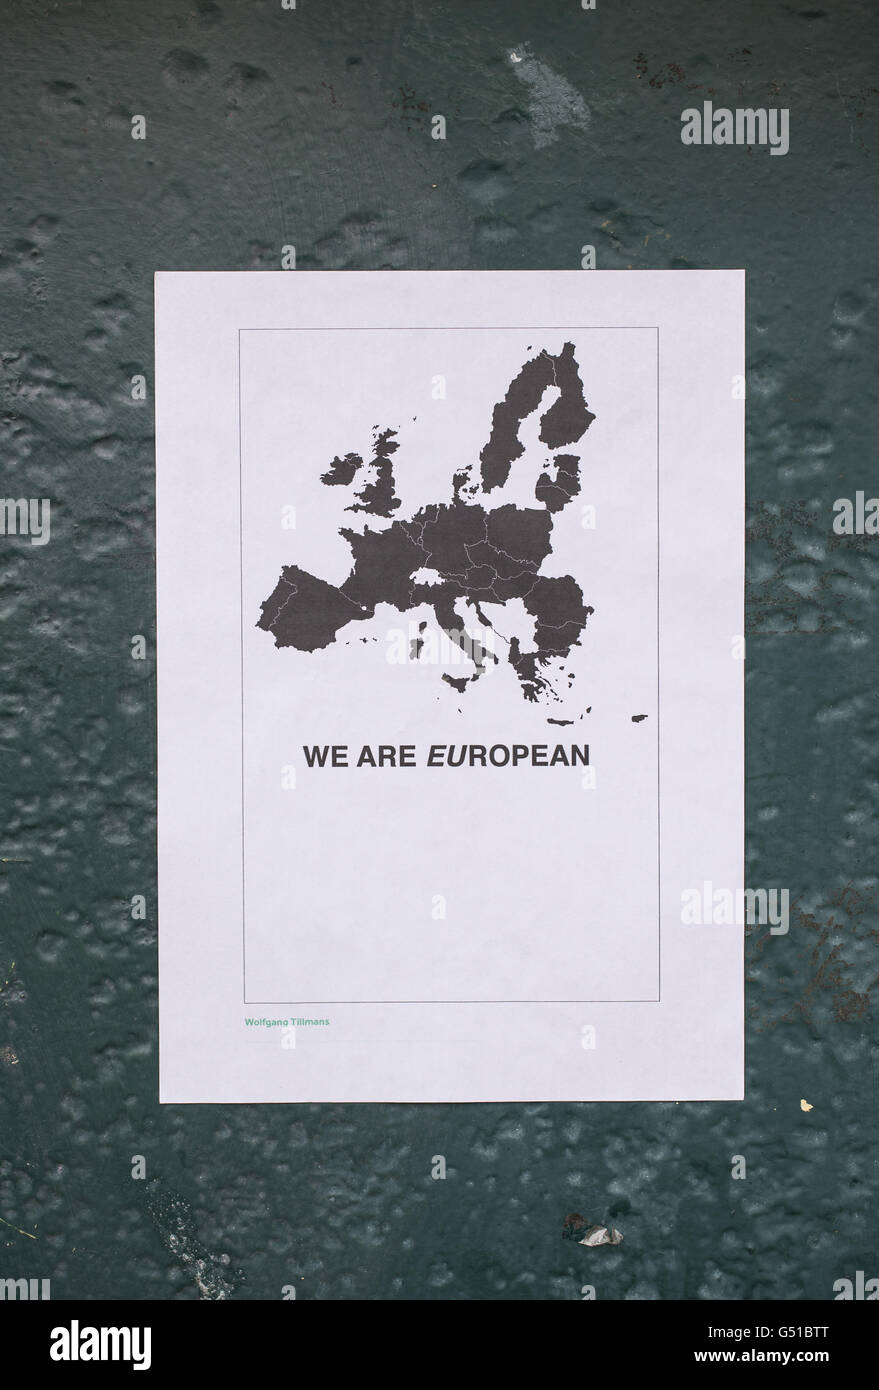 Cartel en favor de un voto para permanecer en la Unión Europea diciendo que "somos europeos" con un mapa de la UE por encima de ella. Foto de stock